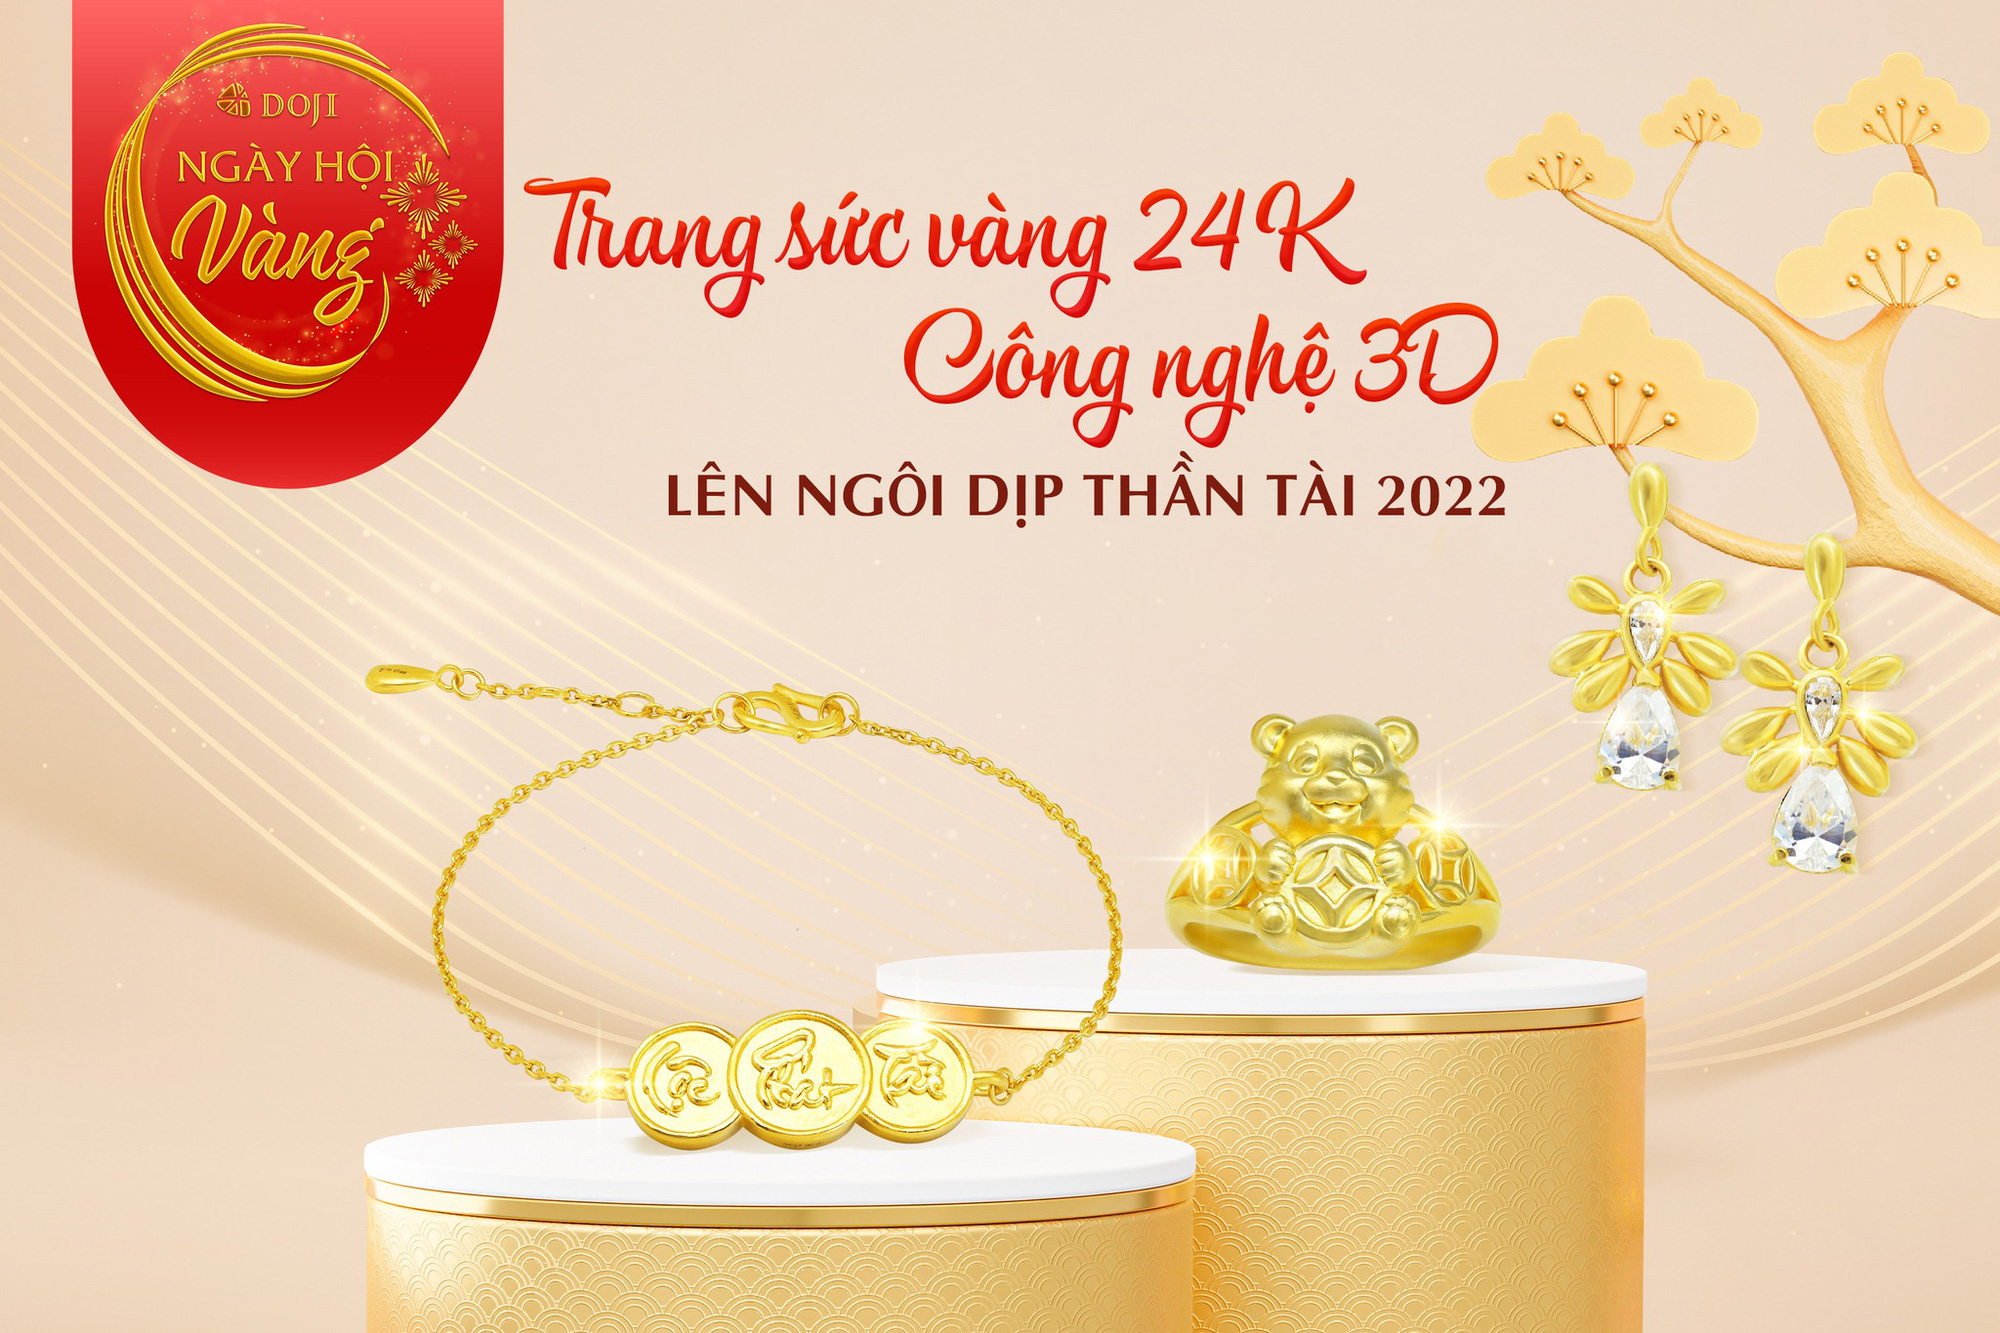 Cửa hàng vàng lớn từ DOJI, Bảo Tín Minh Châu, PNJ,... đủ mẫu đa dạng phục vụ khách mua vàng online lấy vía Thần Tài tại nhà - Ảnh 2.